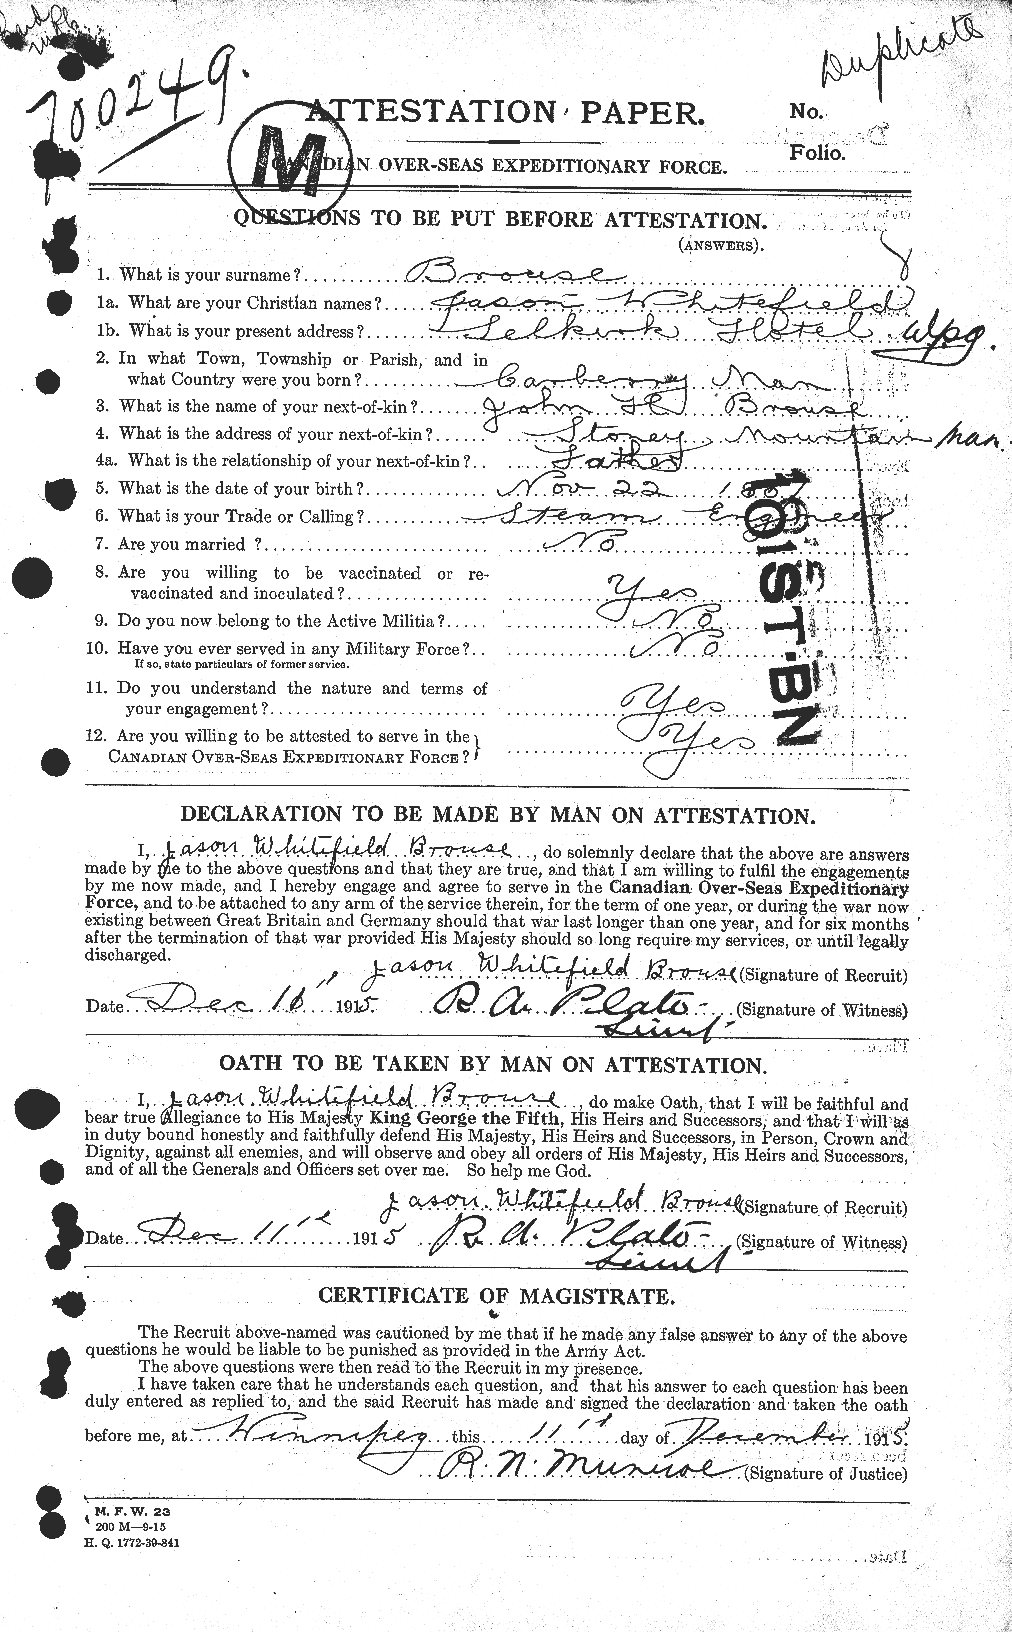 Dossiers du Personnel de la Première Guerre mondiale - CEC 266756a